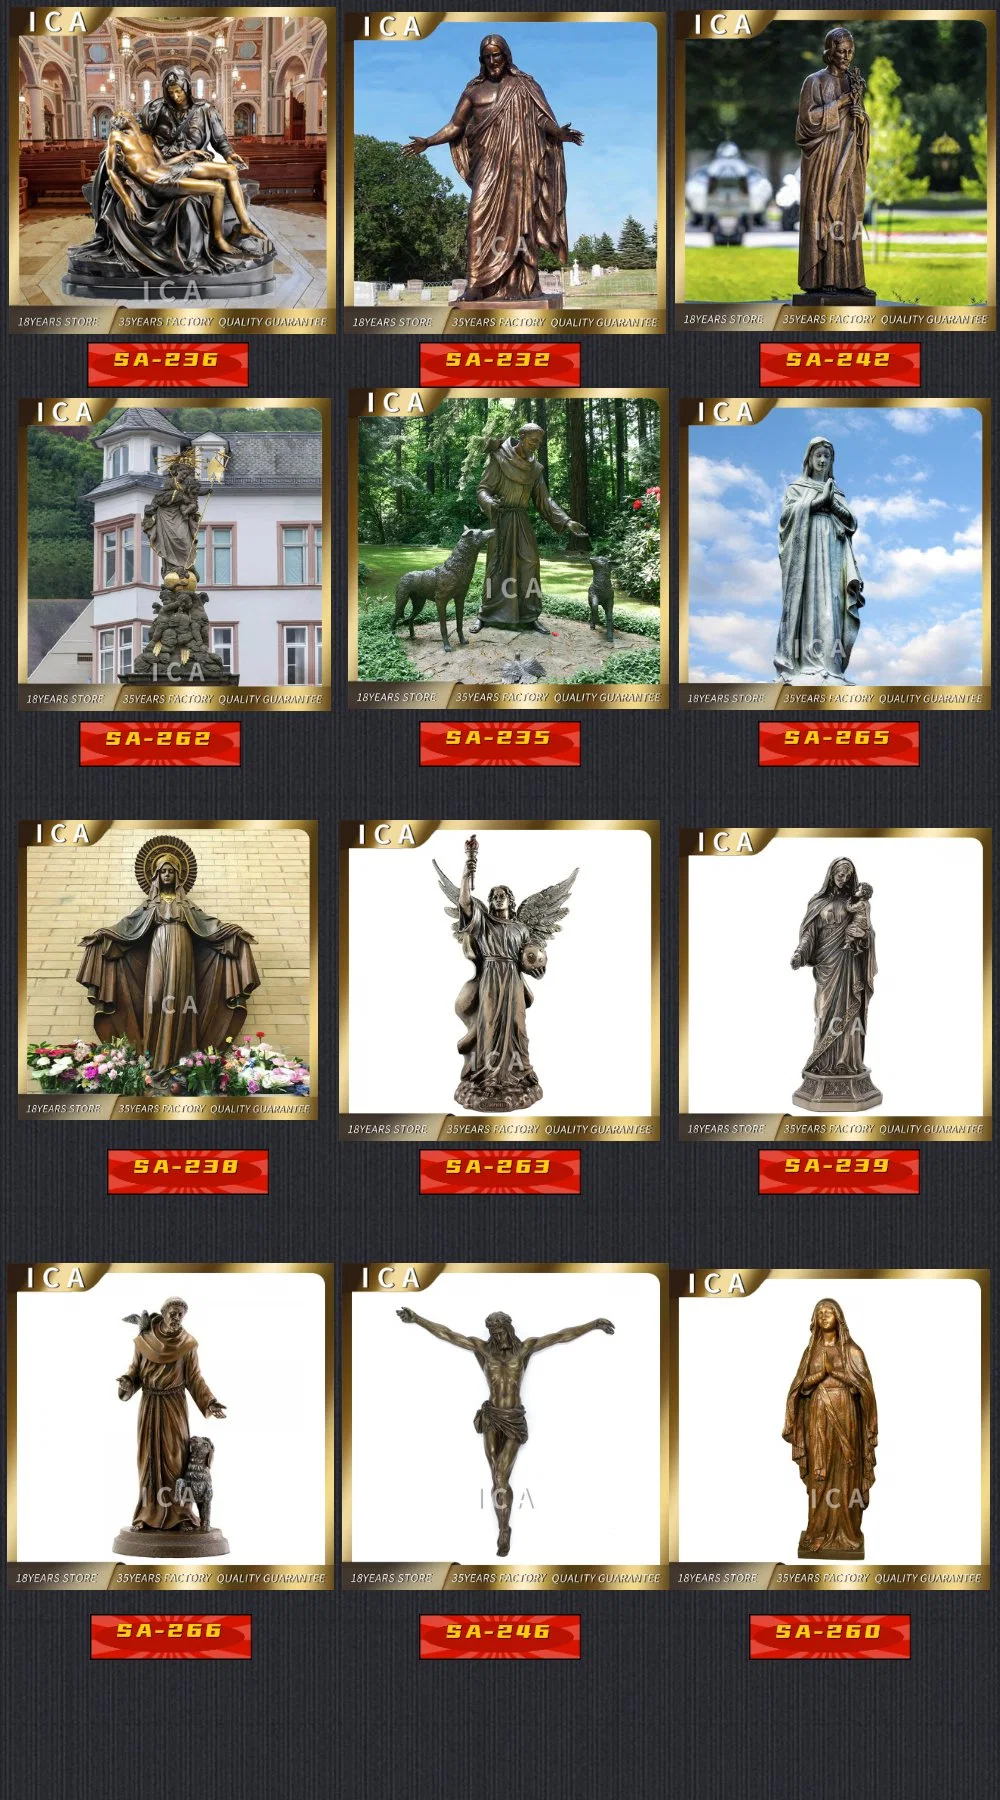 Life Size Famous Religious Statue Bronze Jesus Sculpture for Sale